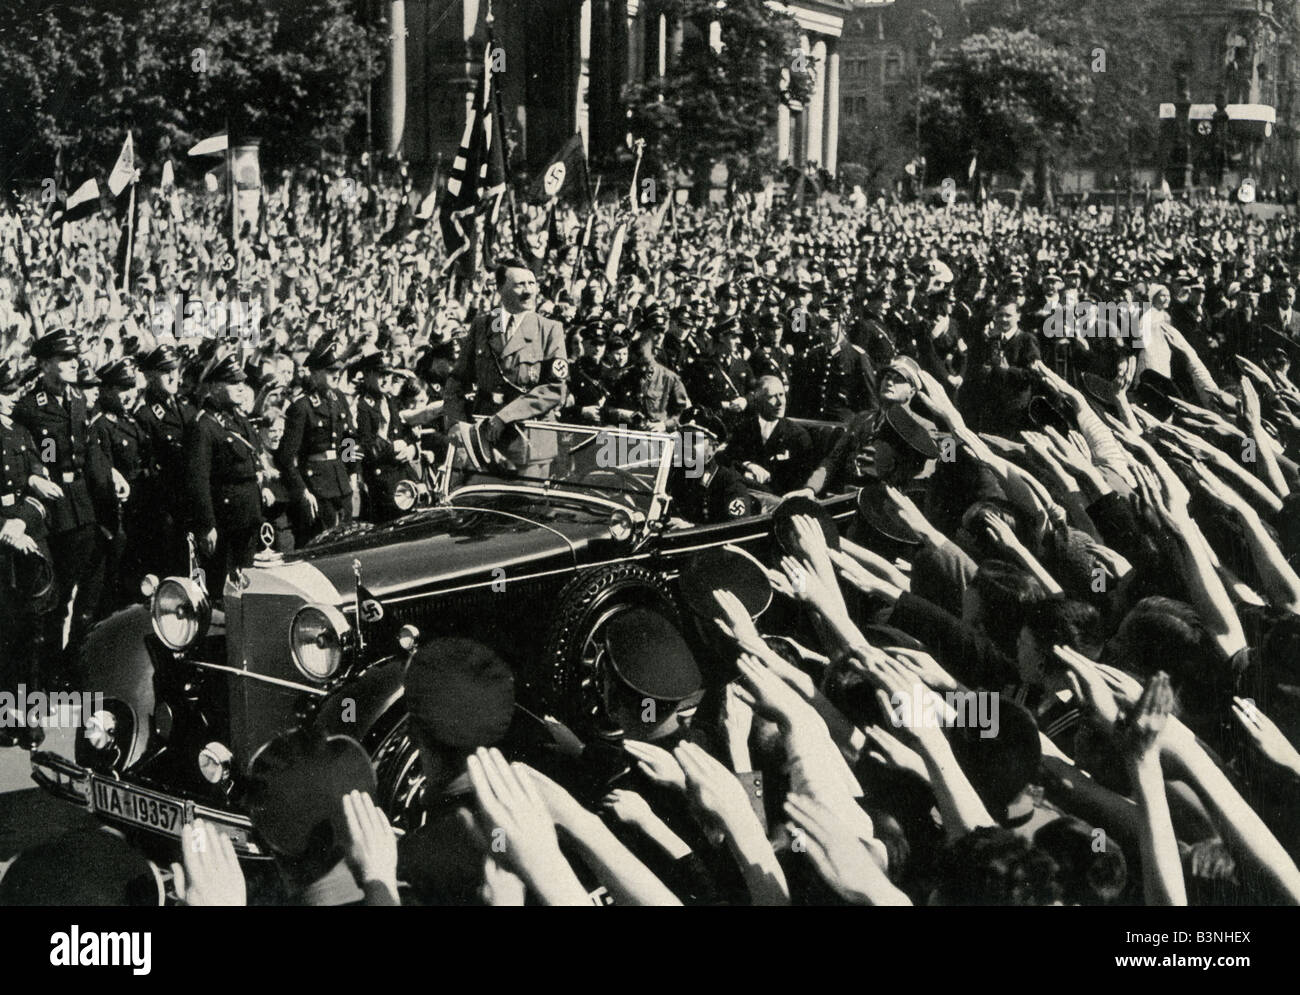 ADOLF HITLER lors d'un rassemblement près de la porte de Brandebourg à Berlin en fin des années 1930 Banque D'Images